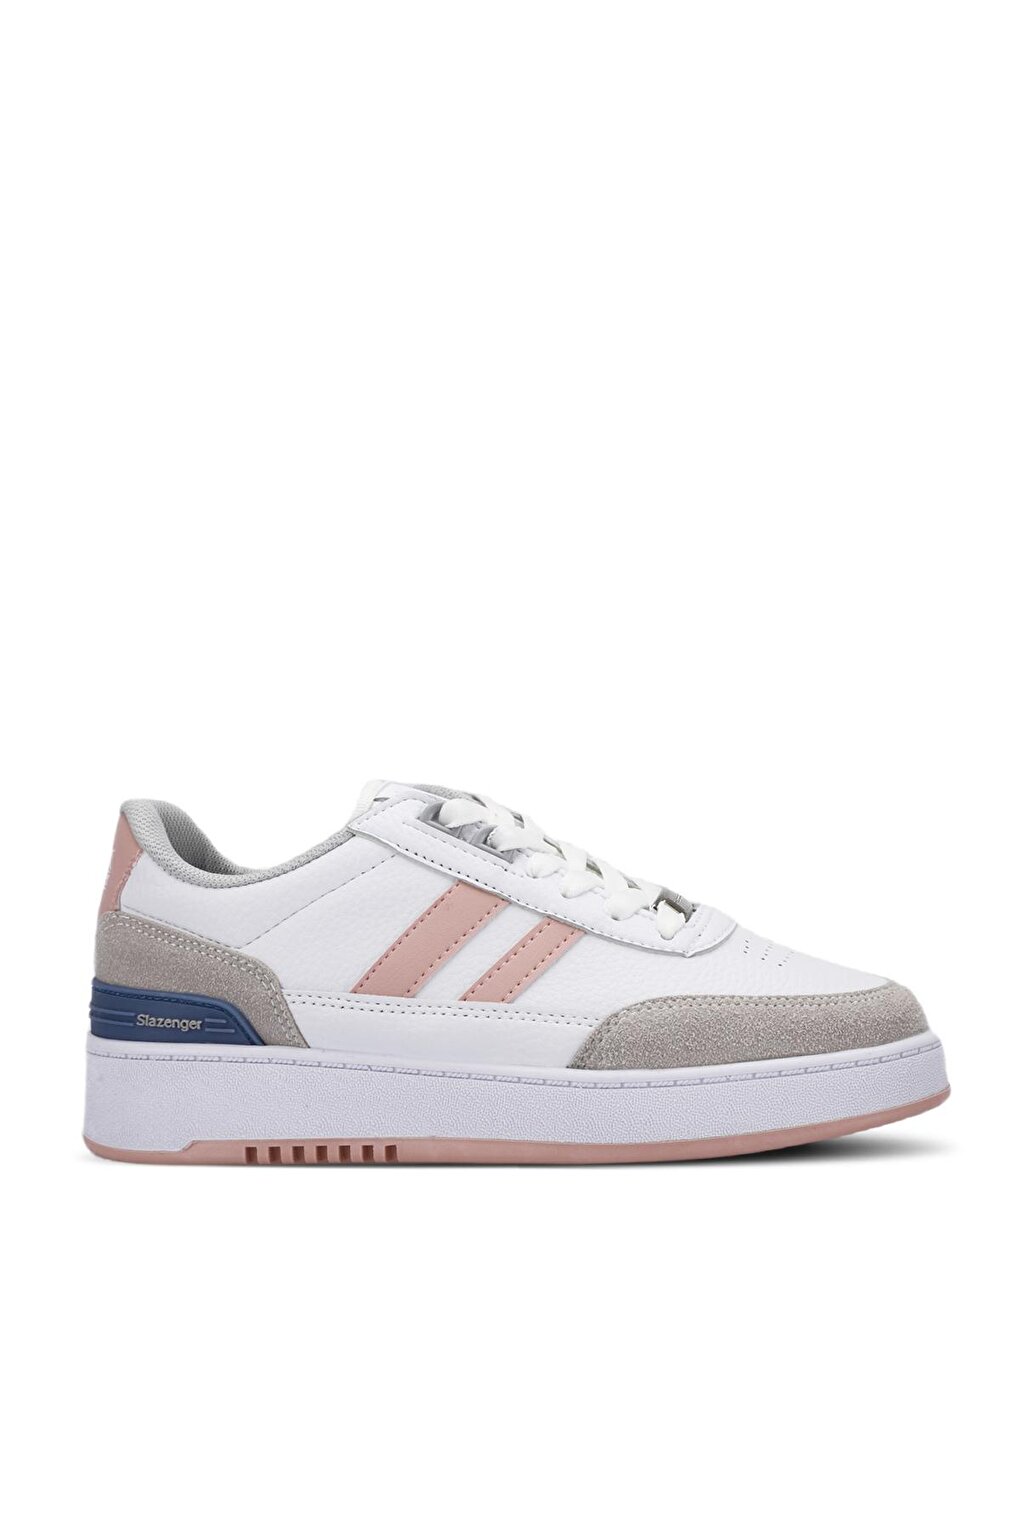 DAPHNE Sneaker Женская обувь Белый/Розовый SLAZENGER